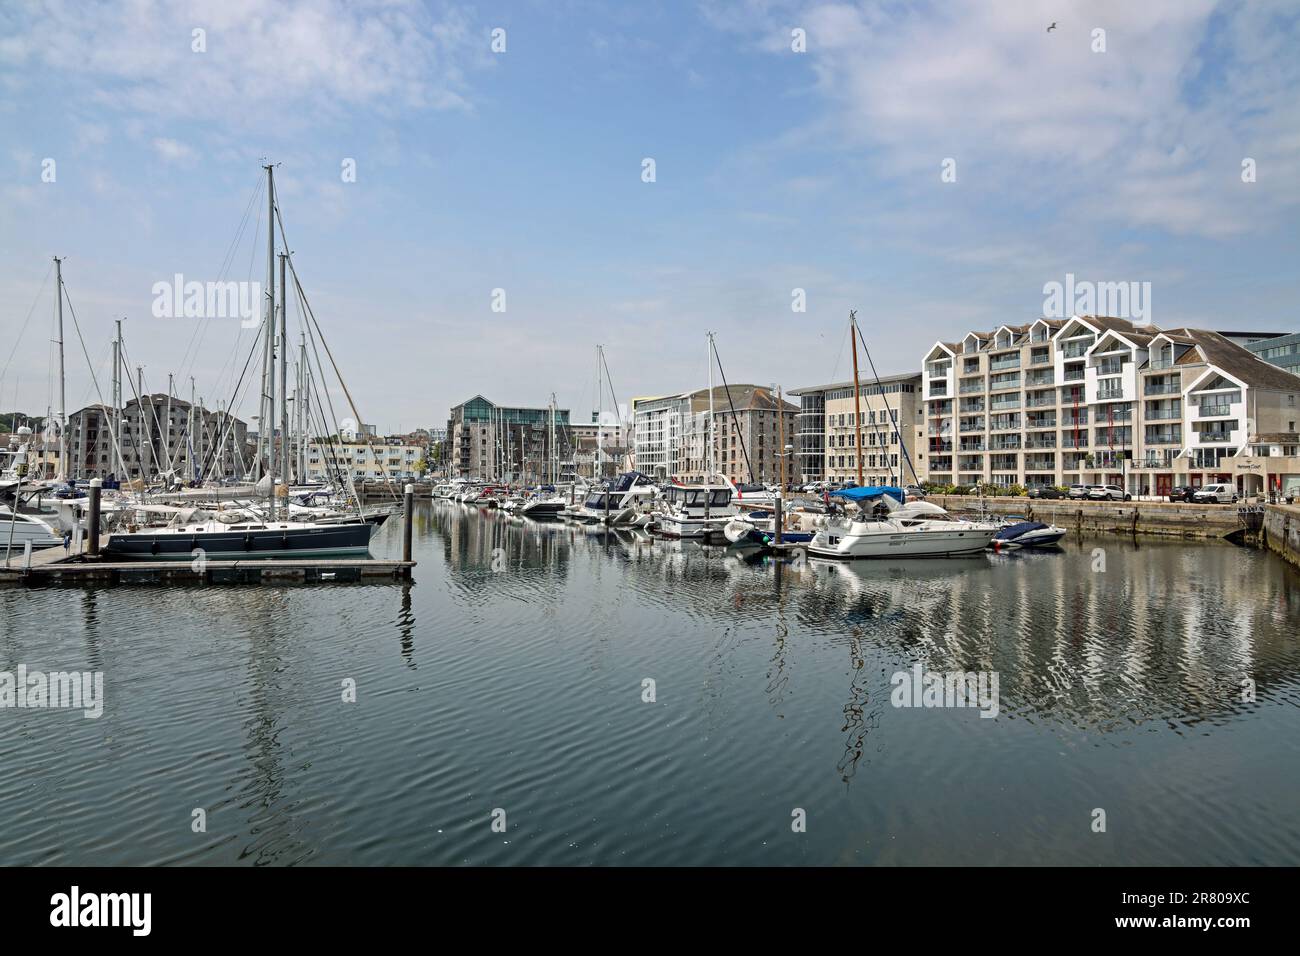 Plymouth Sutton Hafen, inneres Becken, Yachten in einem sicheren Hafen. Gehobene Wohnungen säumen den Umkreis von North Quay und Sutton Wharf. Stockfoto